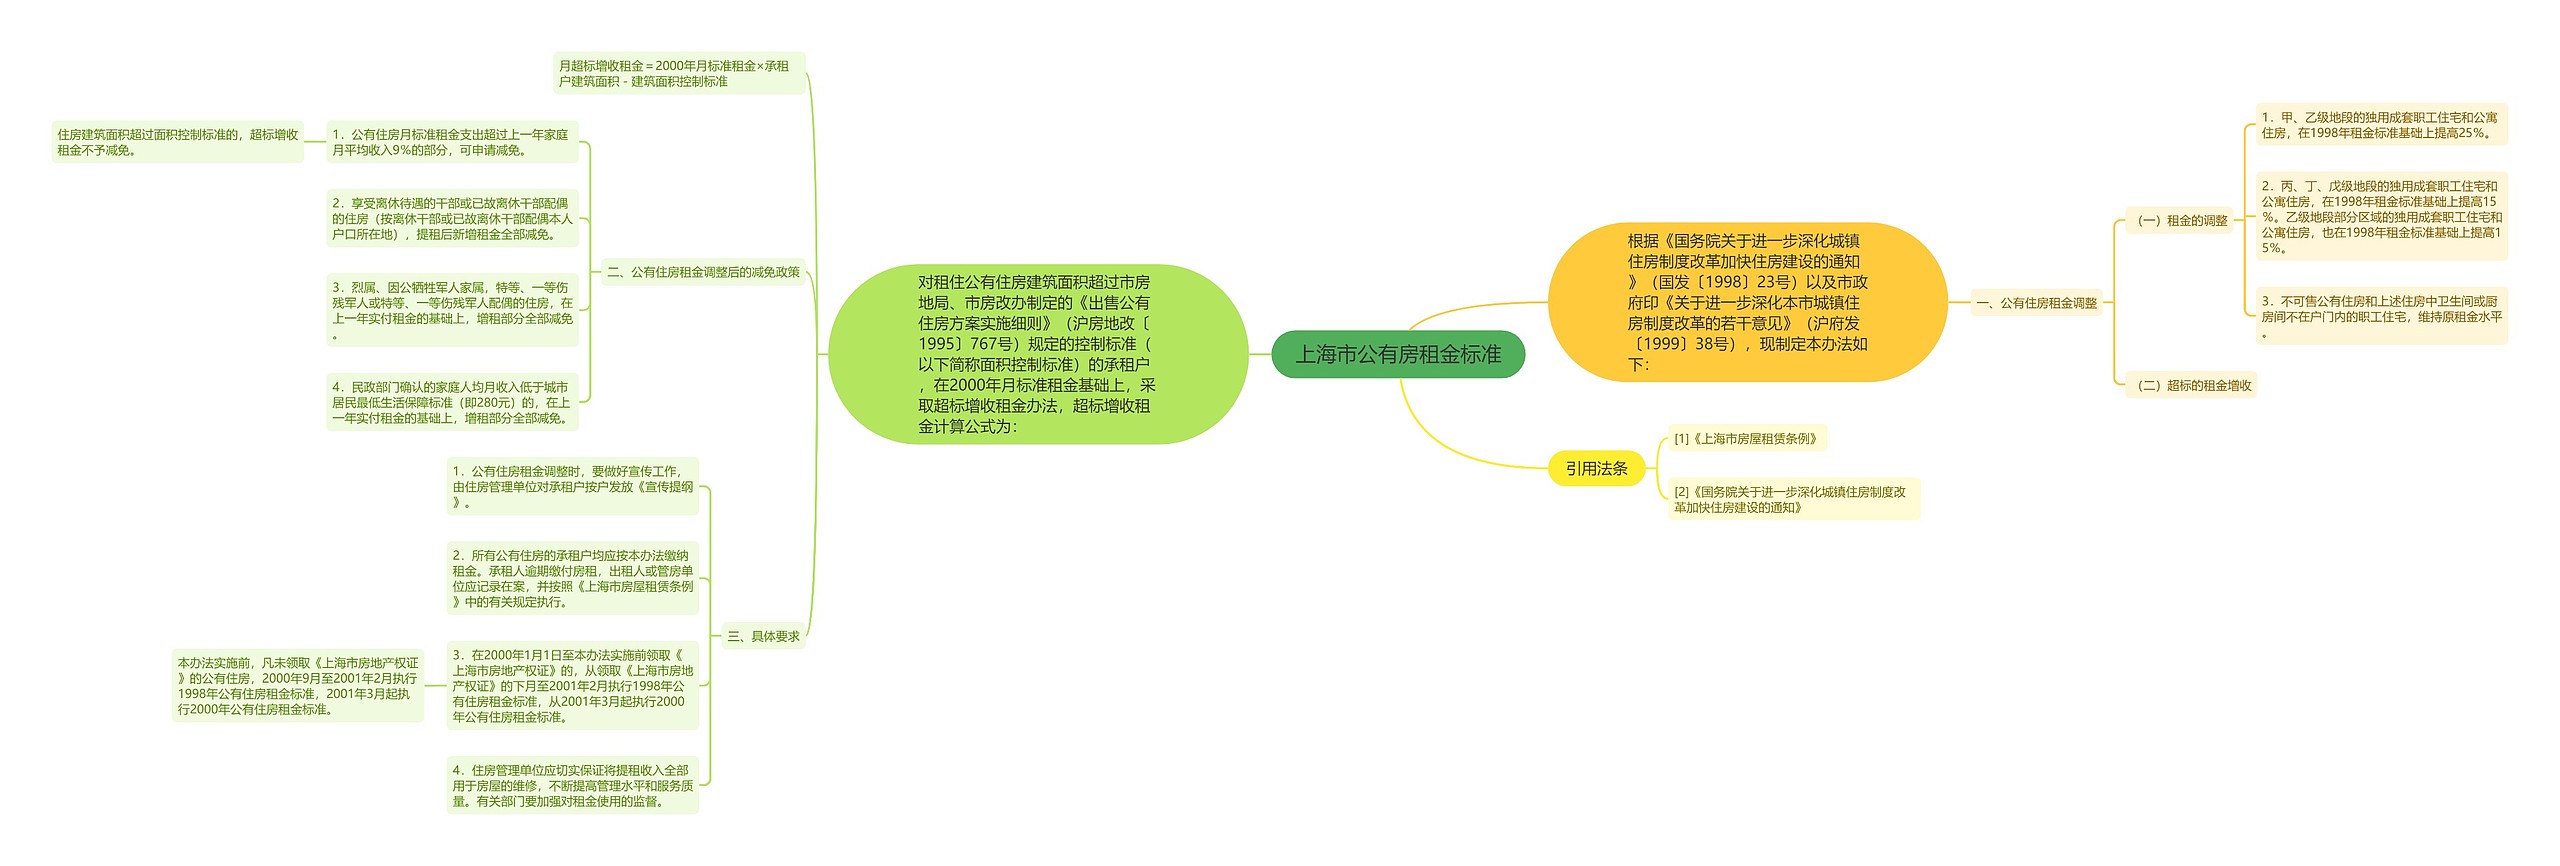 上海市公有房租金标准思维导图